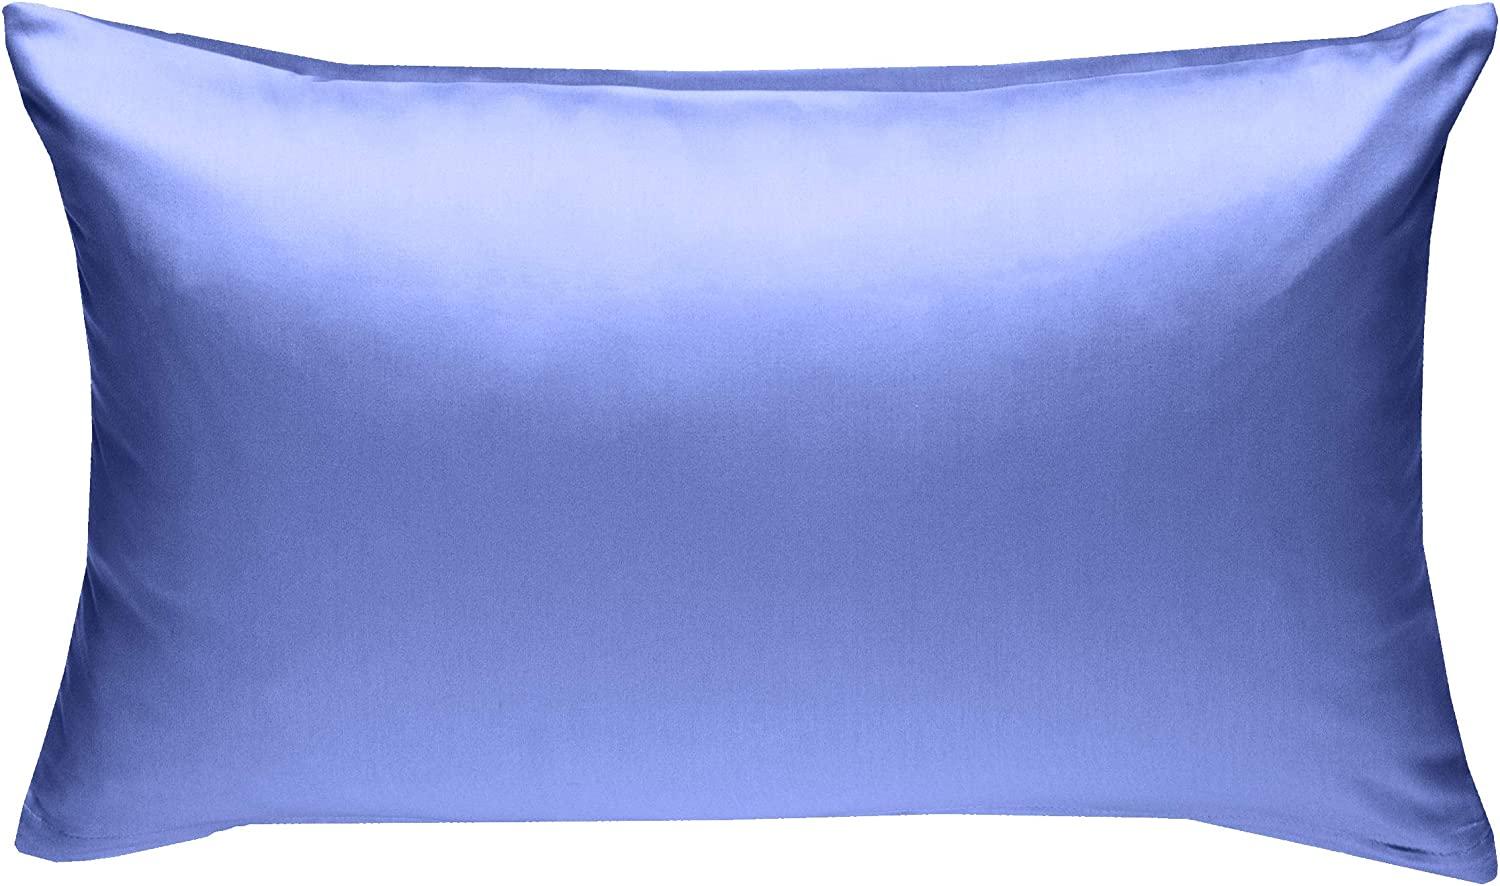 Bettwaesche-mit-Stil Mako-Satin / Baumwollsatin Bettwäsche uni / einfarbig hellblau Kissenbezug 50x70 cm Bild 1